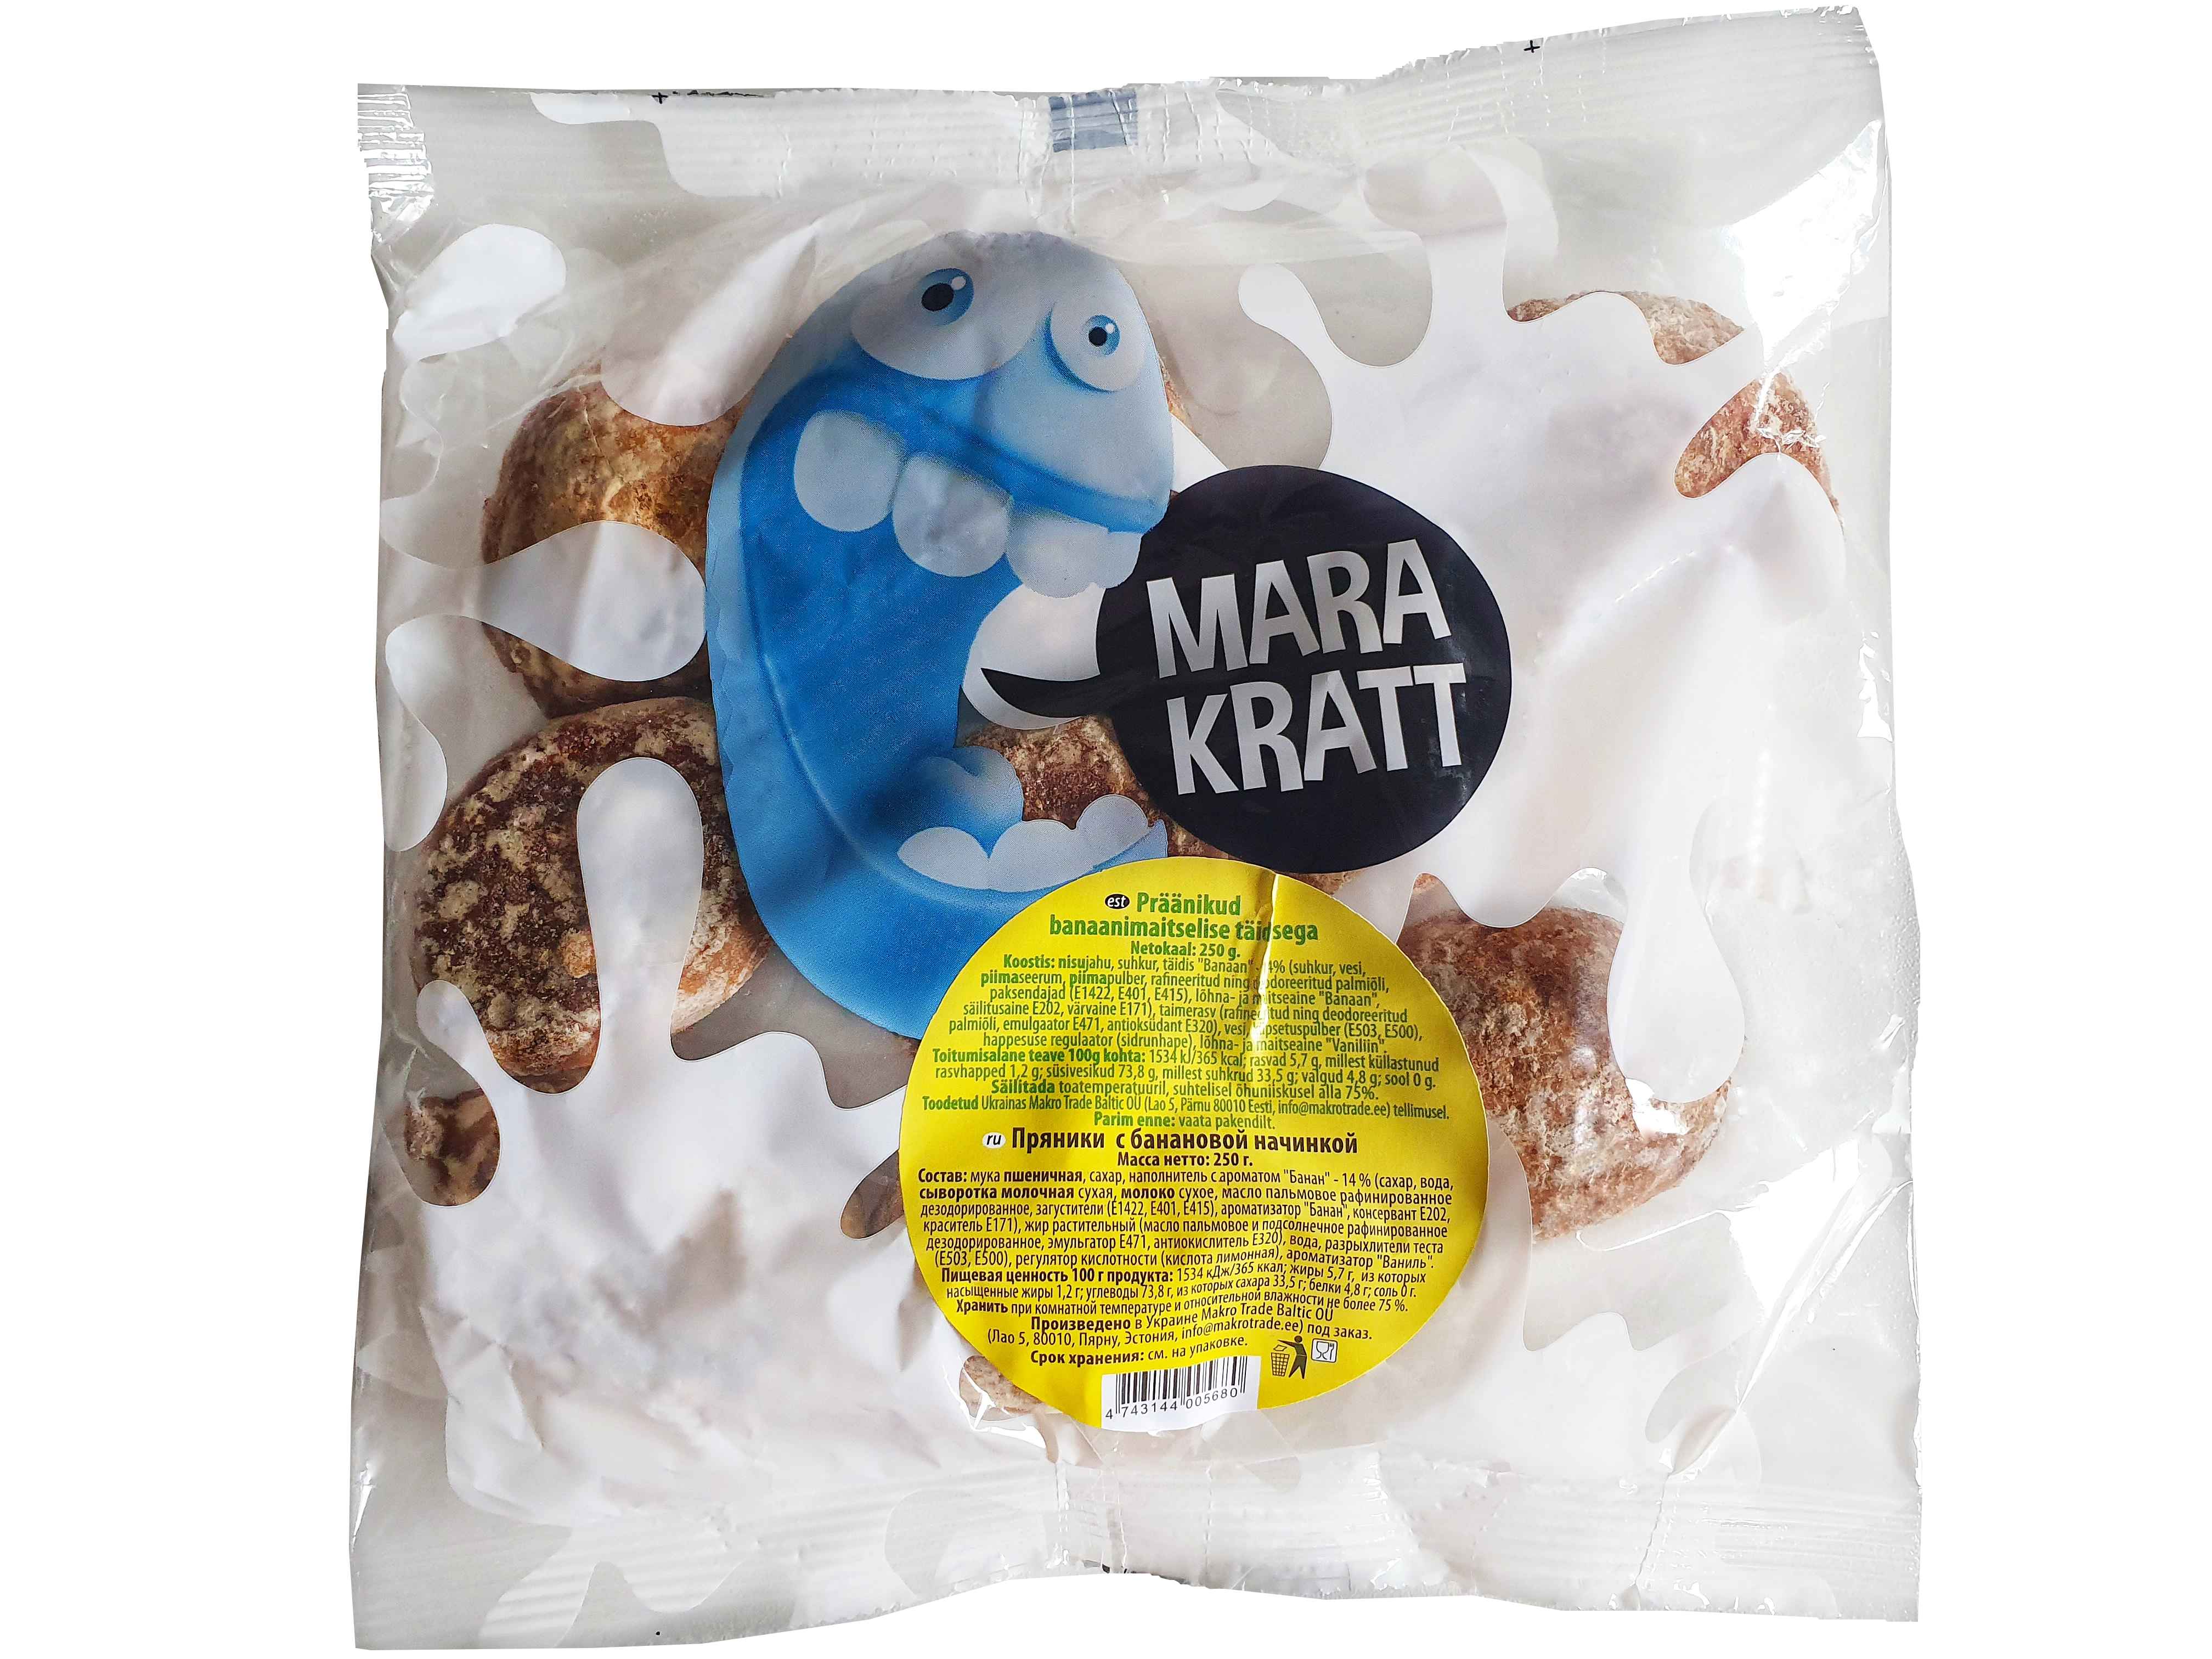 Marakratt gingerbreads with banana filling 250g